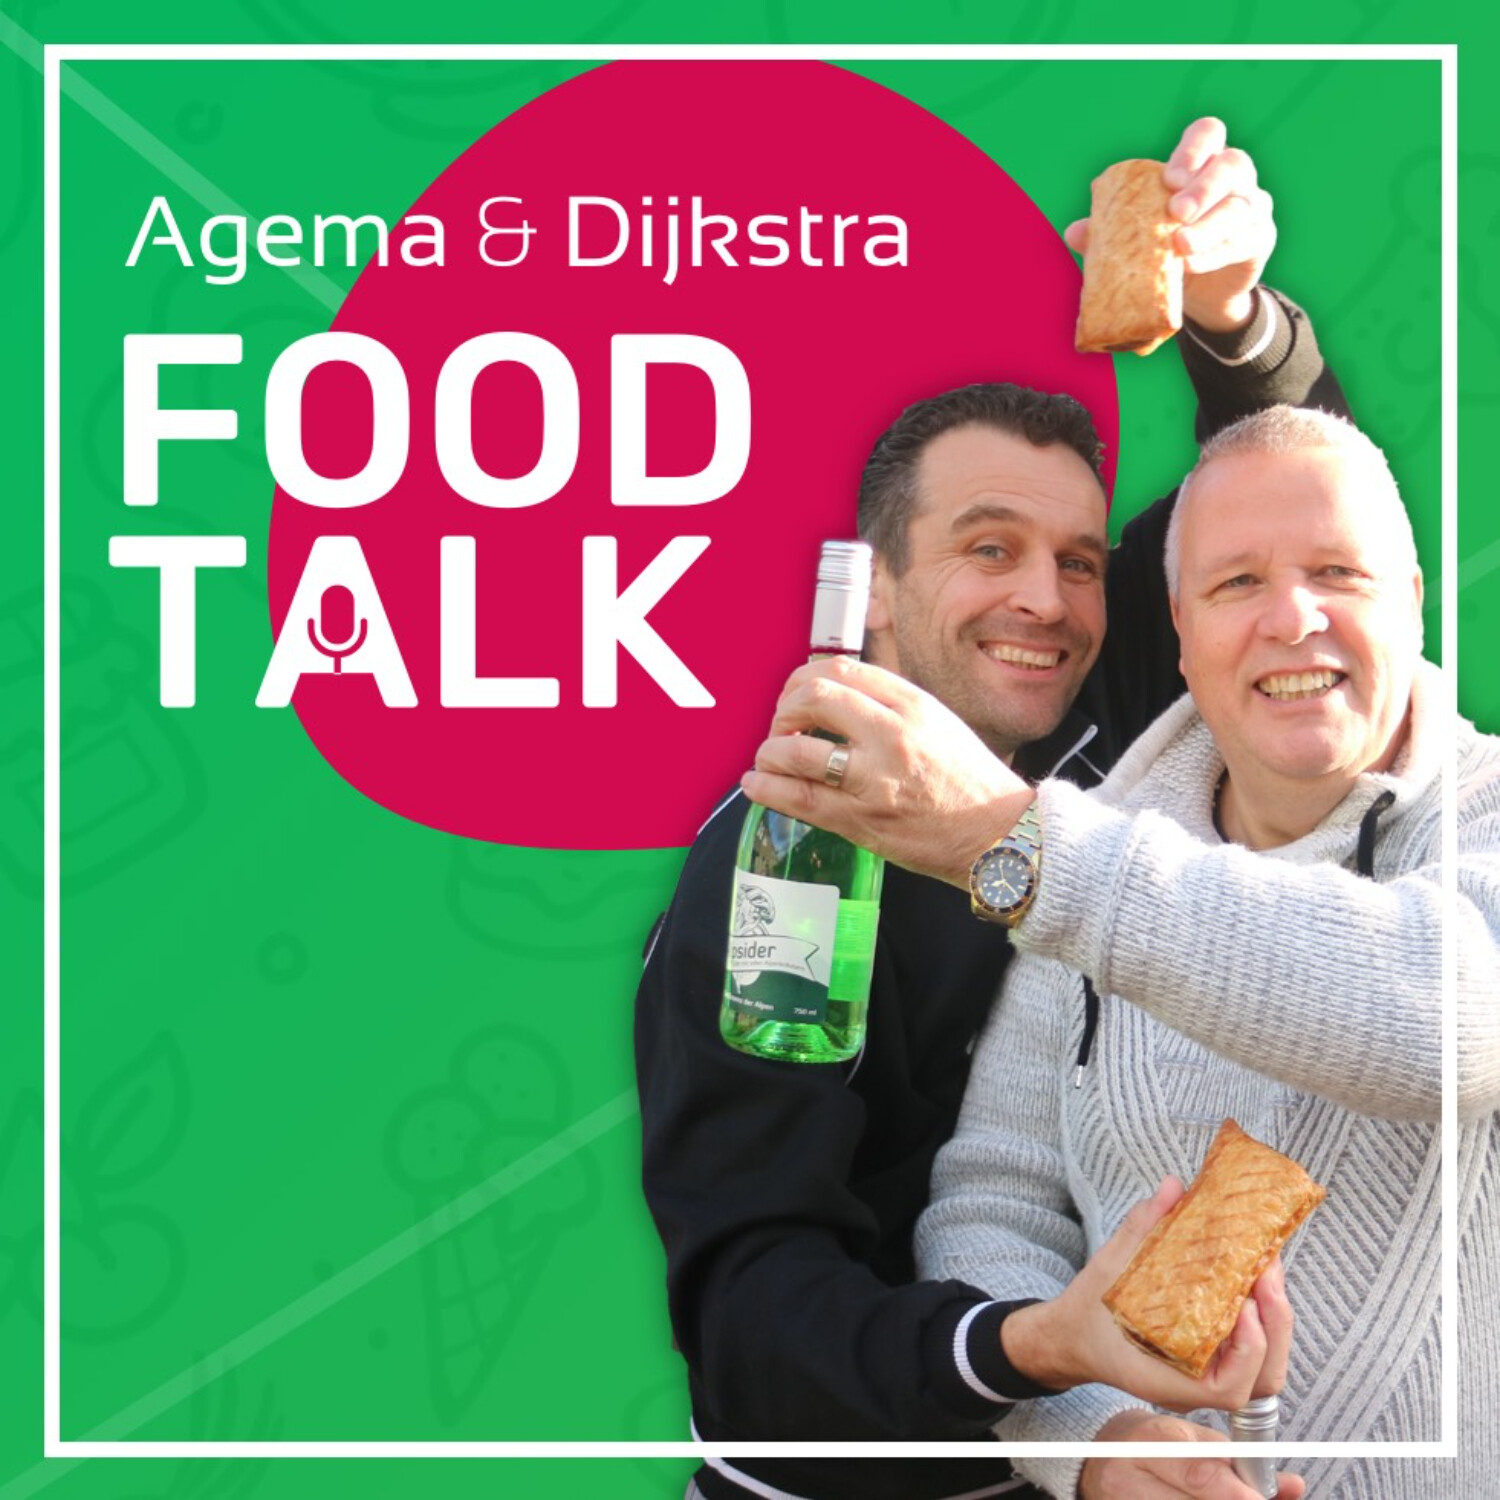 Agema & Dijkstra FoodTalk